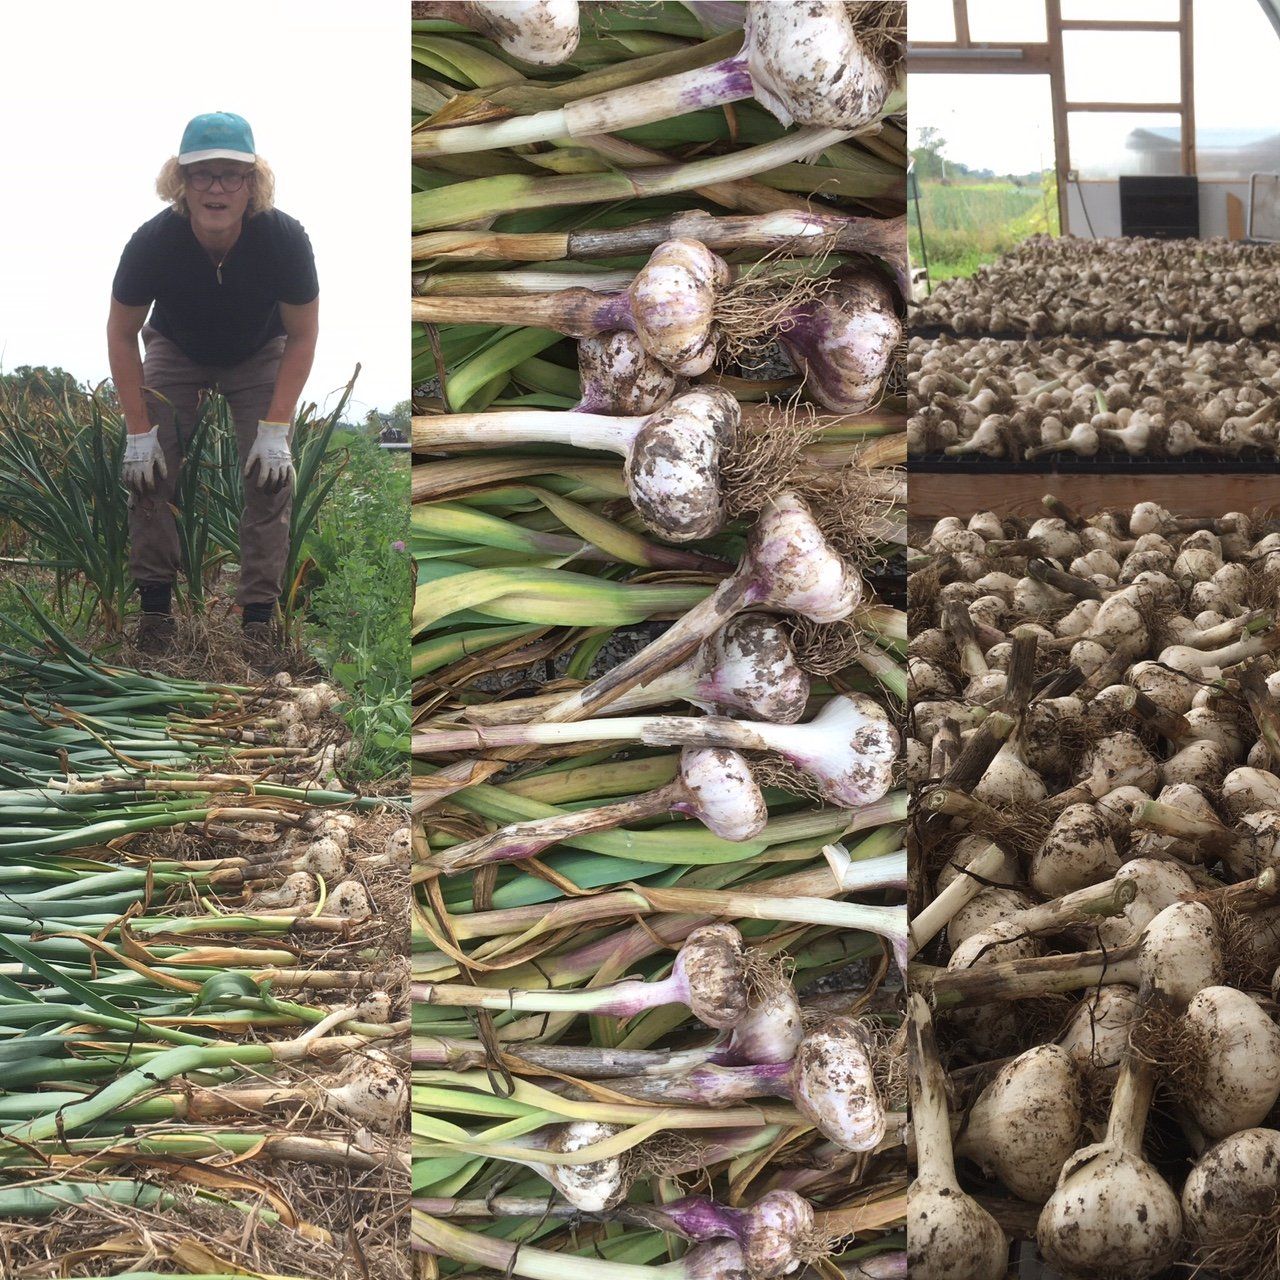 Next Happening: Growing Great Garlic